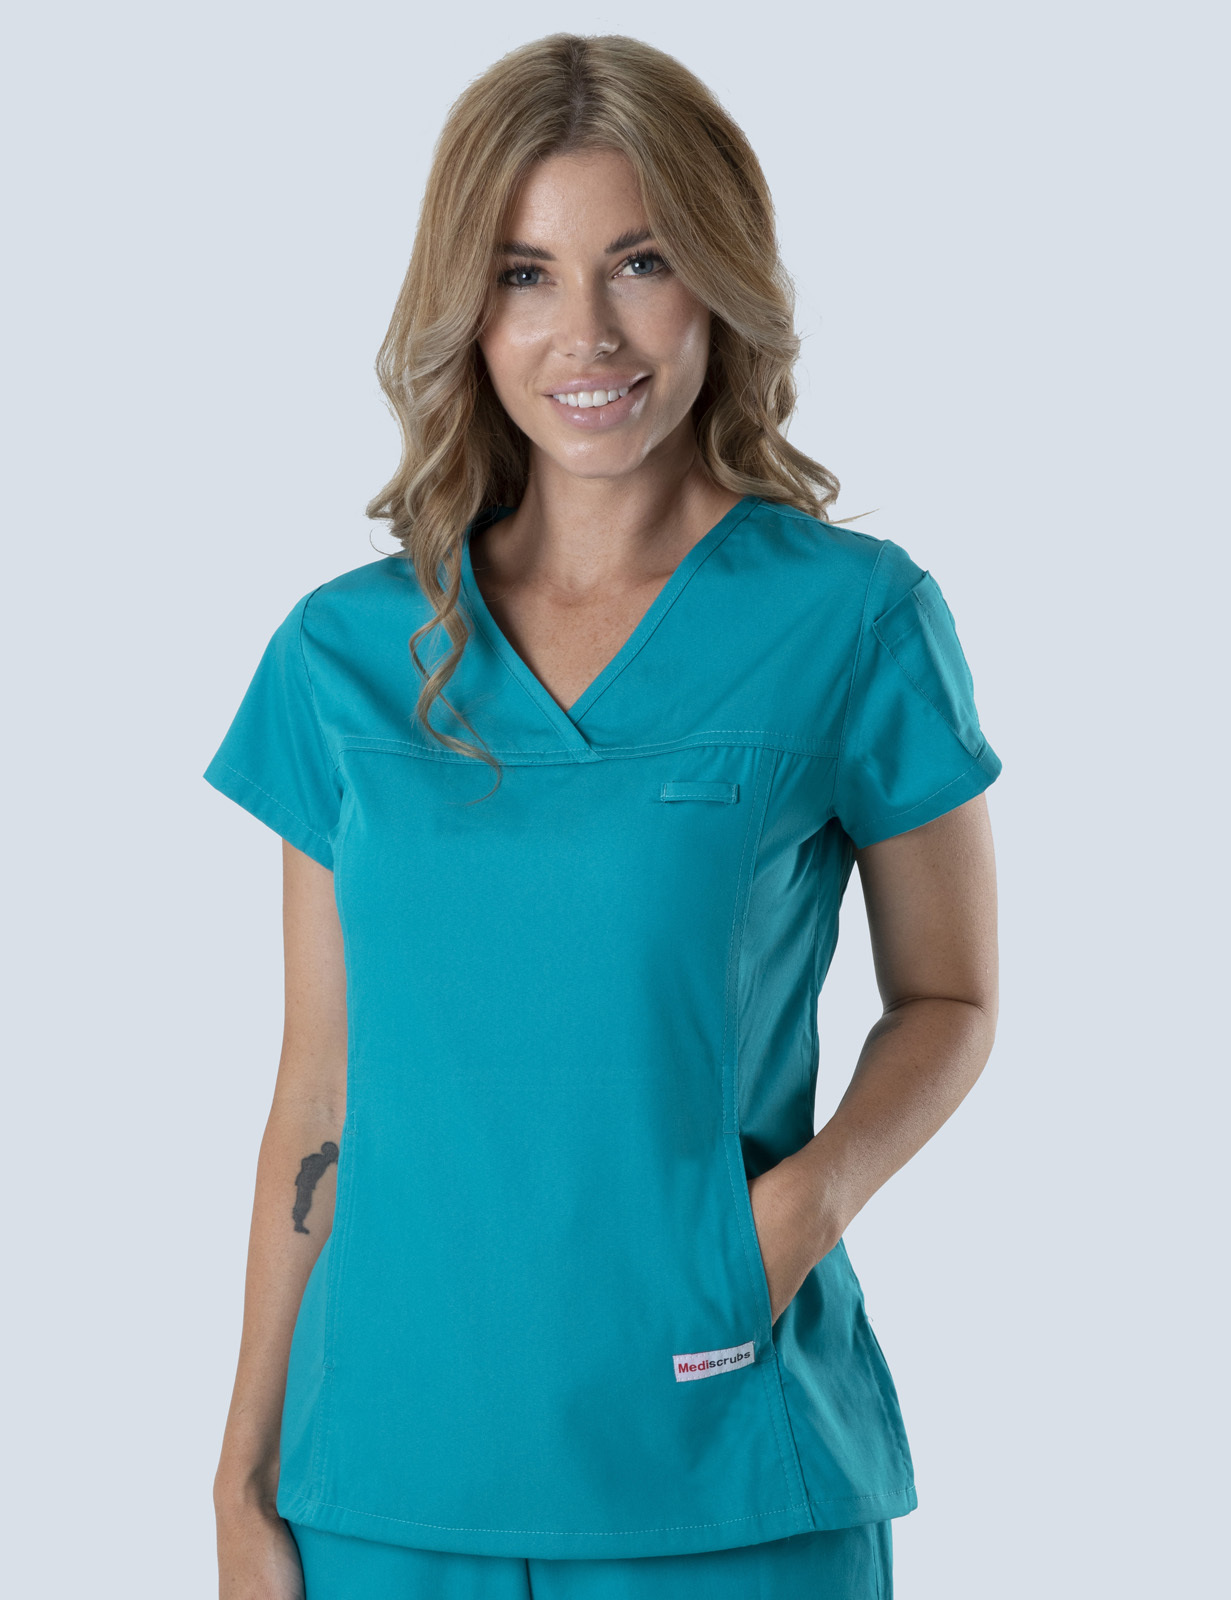 Queensland Children's Hospital Emergency Department Doctor Uniform Top Bundle (Women's Fit Top in Teal  incl Logos)